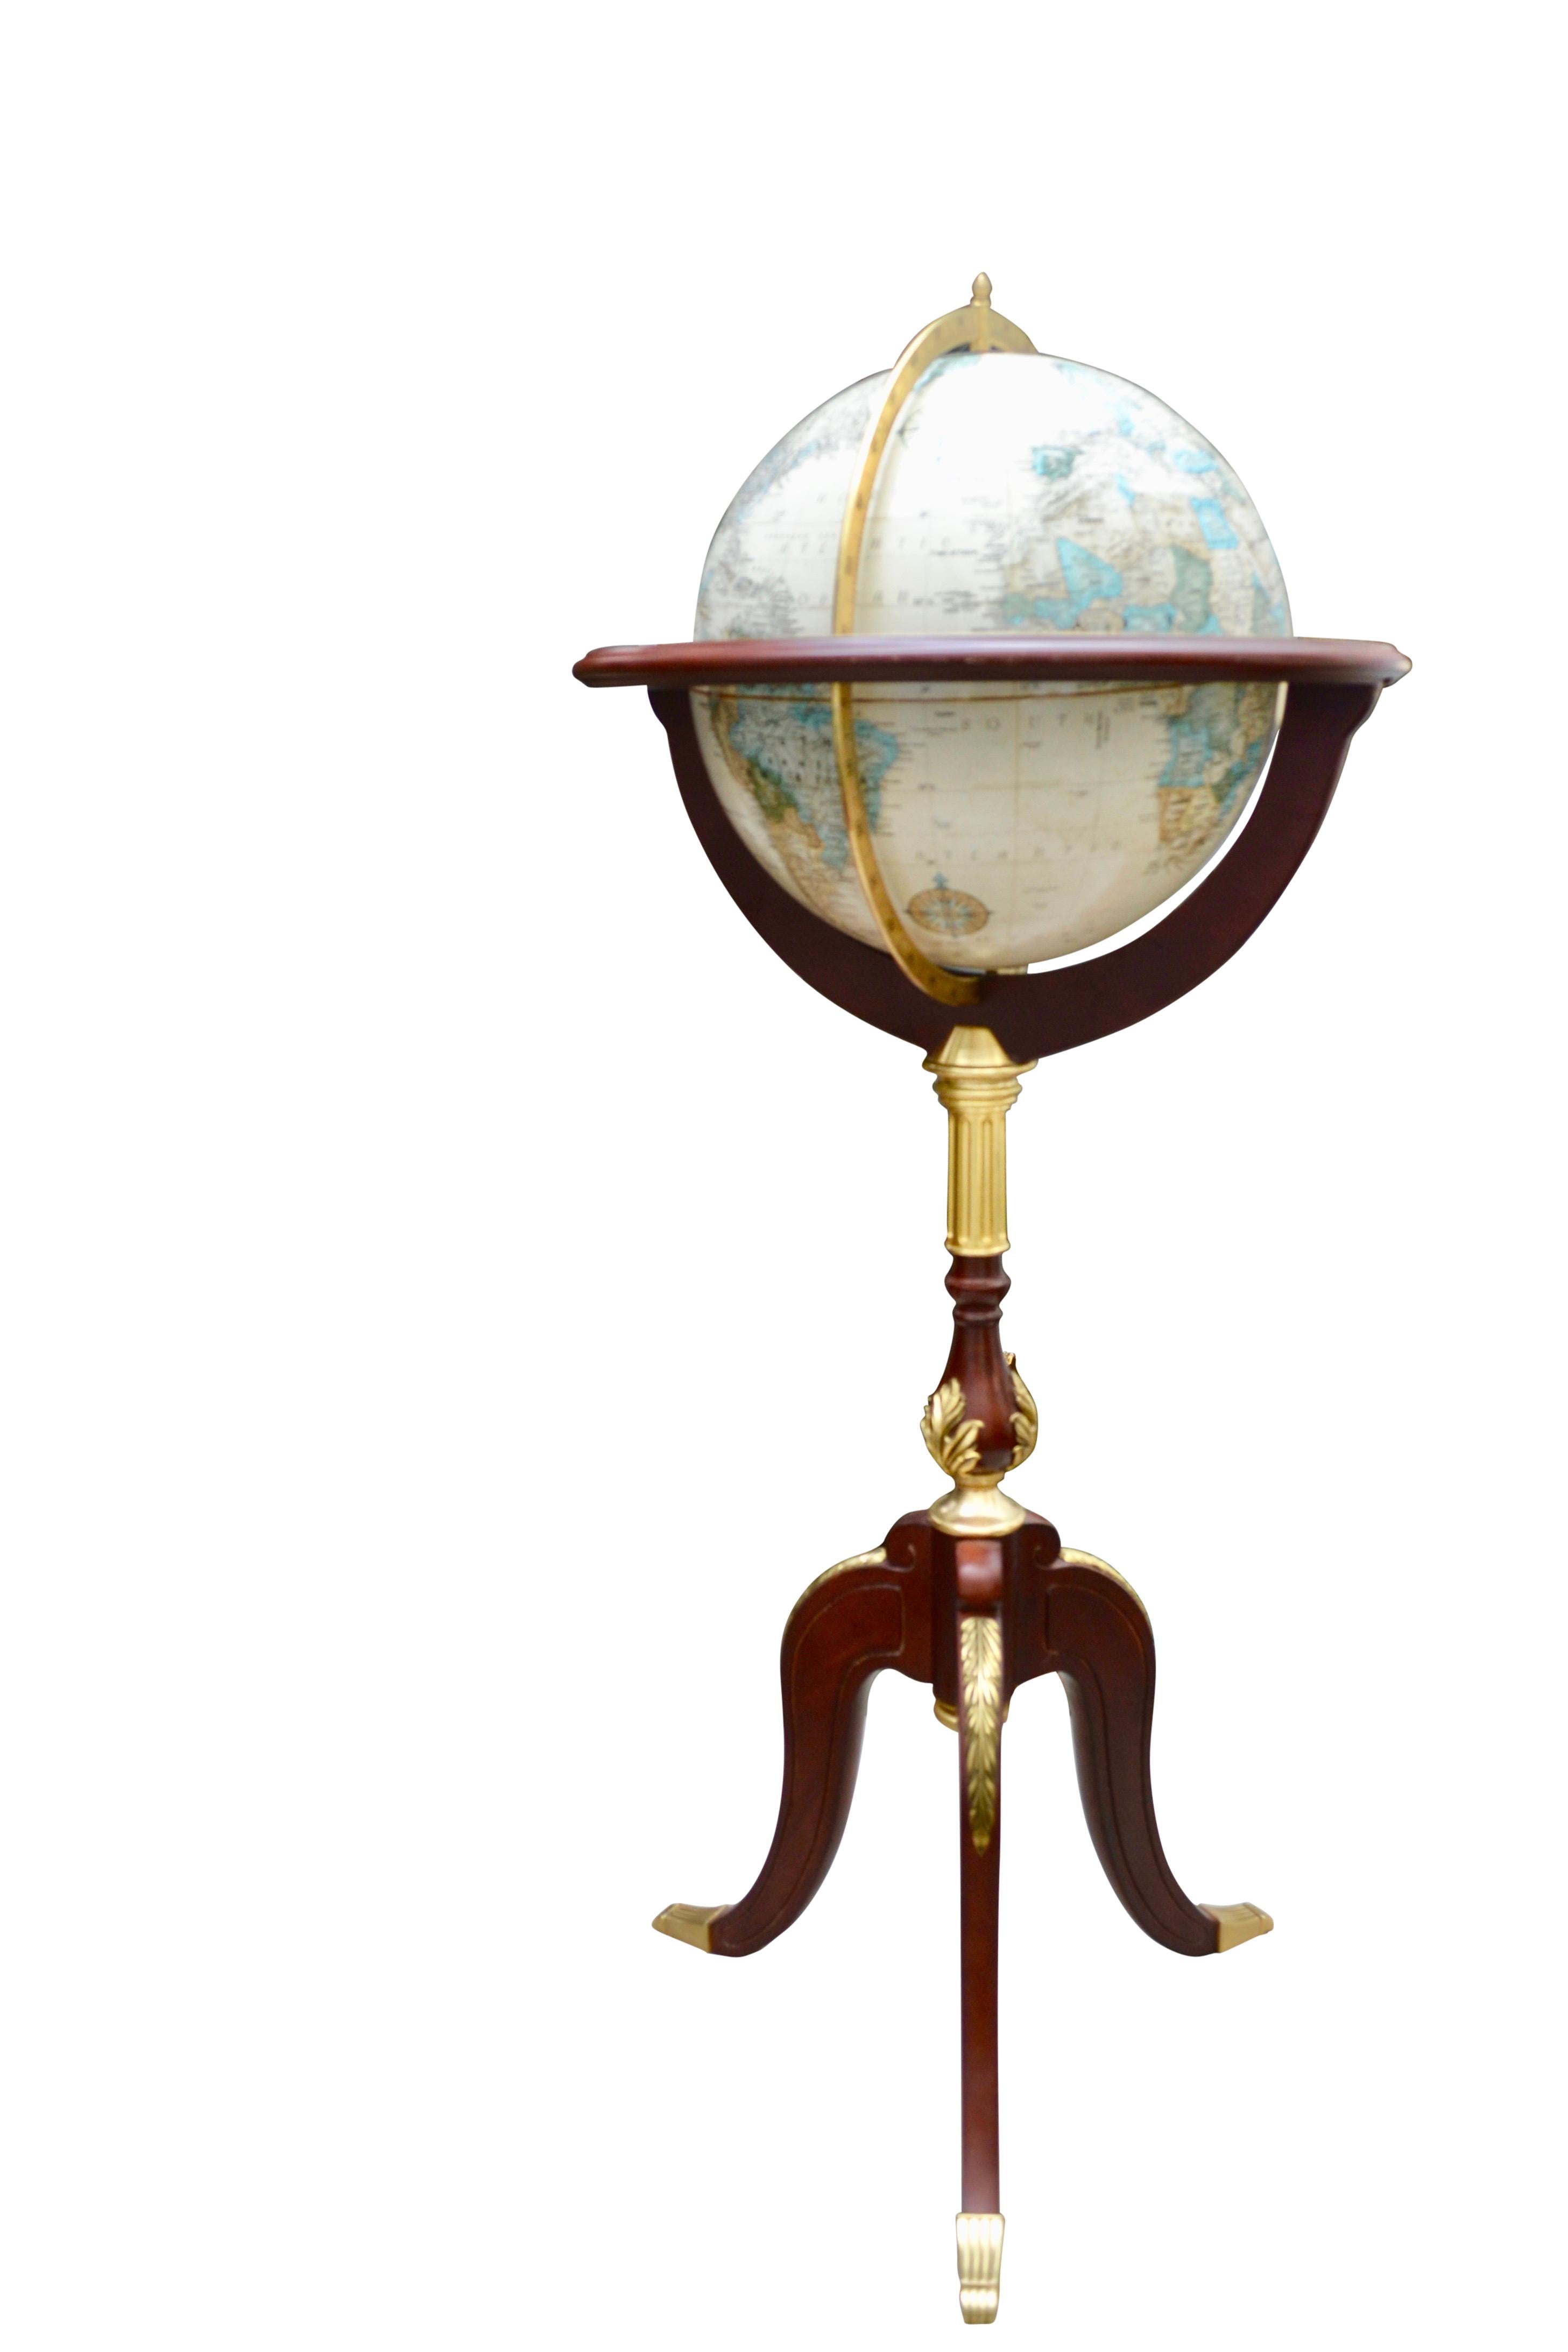 A  seltener stehender Globus, hergestellt von der Franklin Mint,  zu einem Entwurf, wie er von der Royal Geographic Society herausgegeben wurde. Der Globus ist auf einem dreibeinigen Mahagonisockel montiert, der durch  vergoldete Bronzebeschläge.